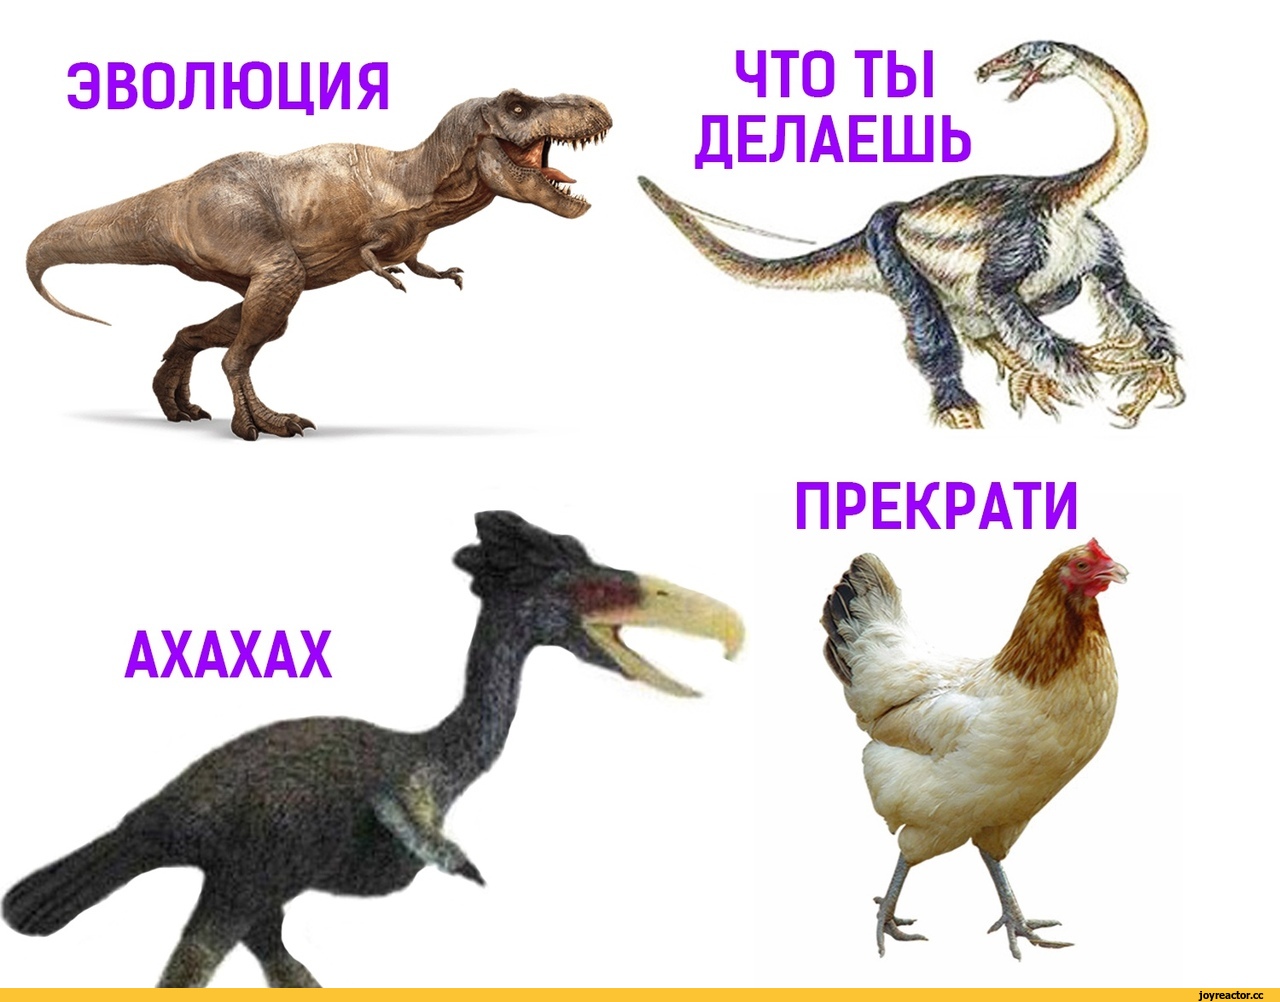 Развитие динозавров. Эволюция динозавров. Курица родственник динозавра. Курица потомок динозавров. Динозавр прародитель курицы.